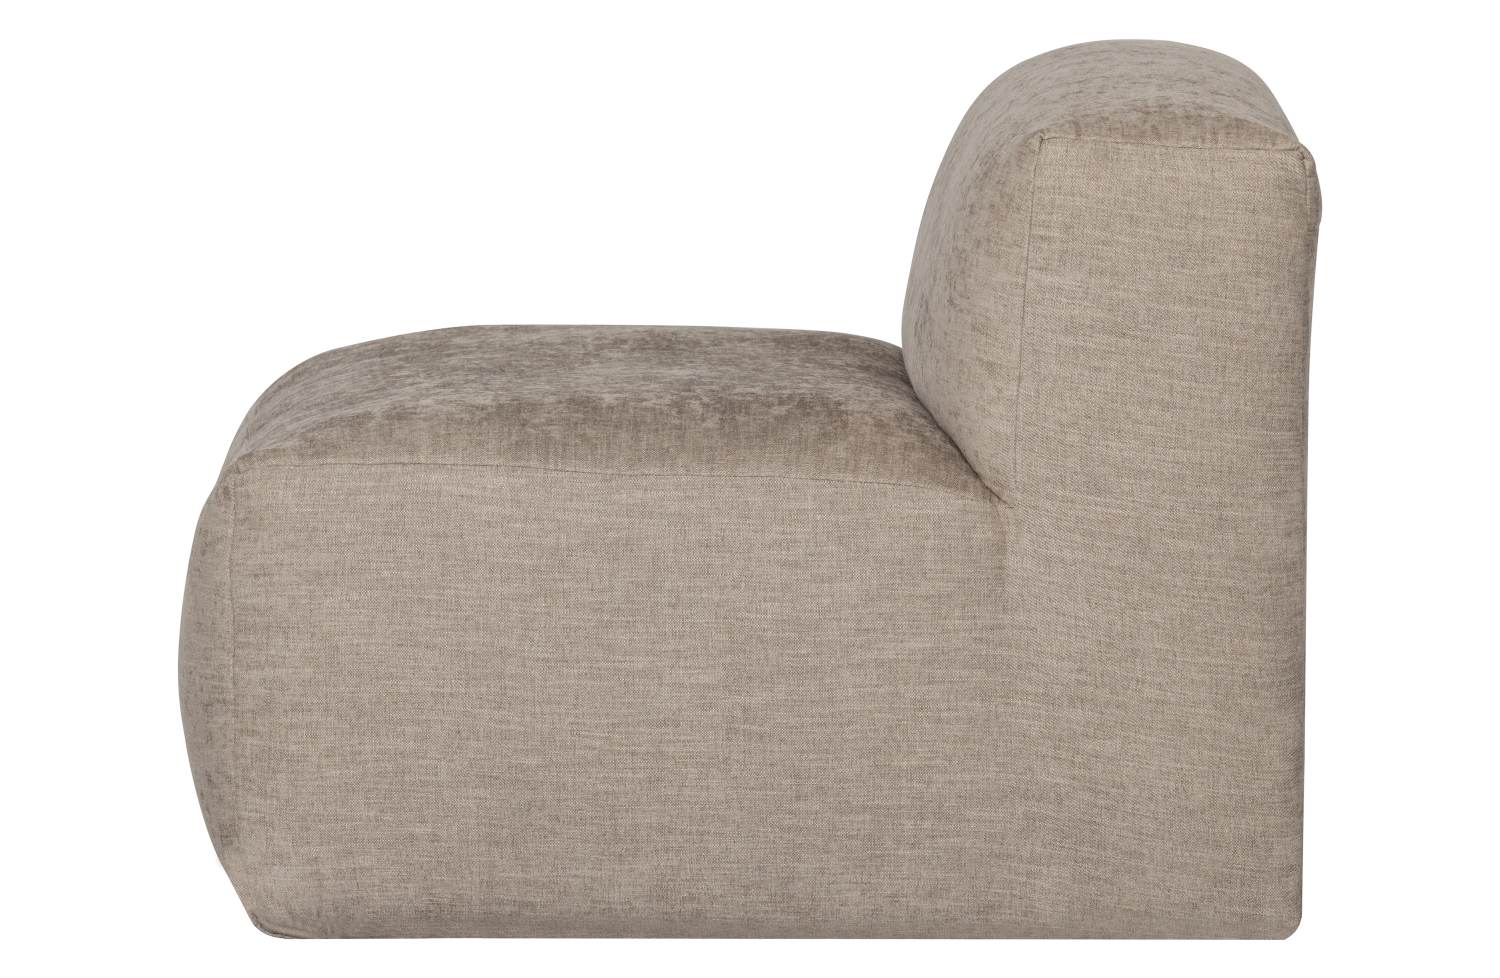 Das Modulsofa Yent als 1-Sitzer überzeugt mit seinem modernen Design. Gefertigt wurde es aus Webstoff, welcher einen hellgrauen Farbton besitzt. Das Sofa ist beliebig konfigurierbar. Die Sitzhöhe des Sofas beträgt 47 cm.